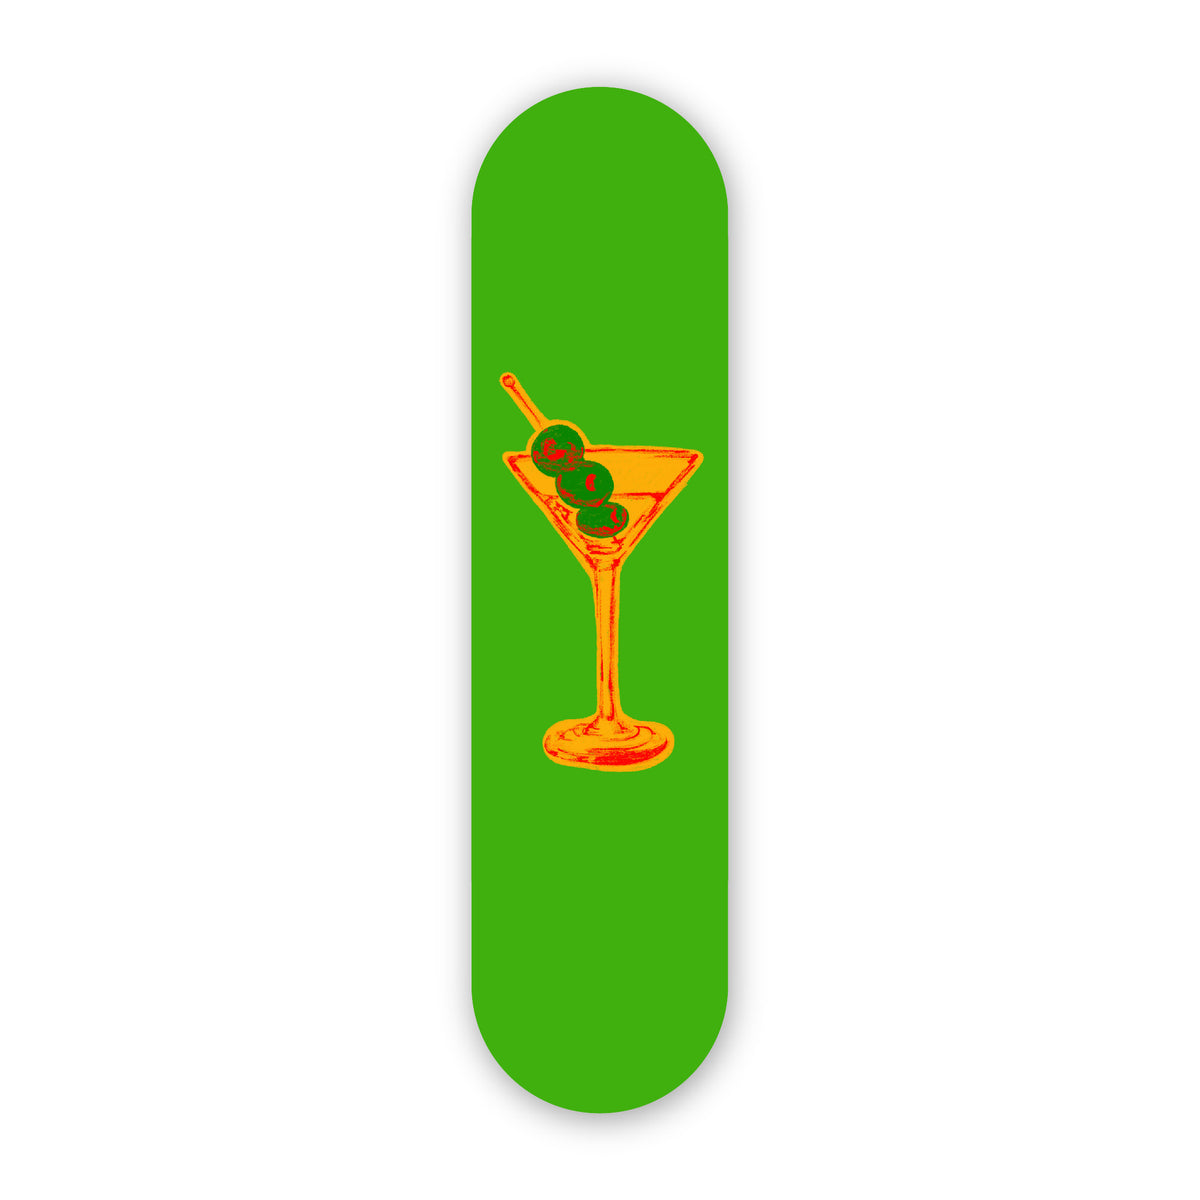 Wall Art of Retro Martini Skateboard Design in Acrylic Glass - Retro